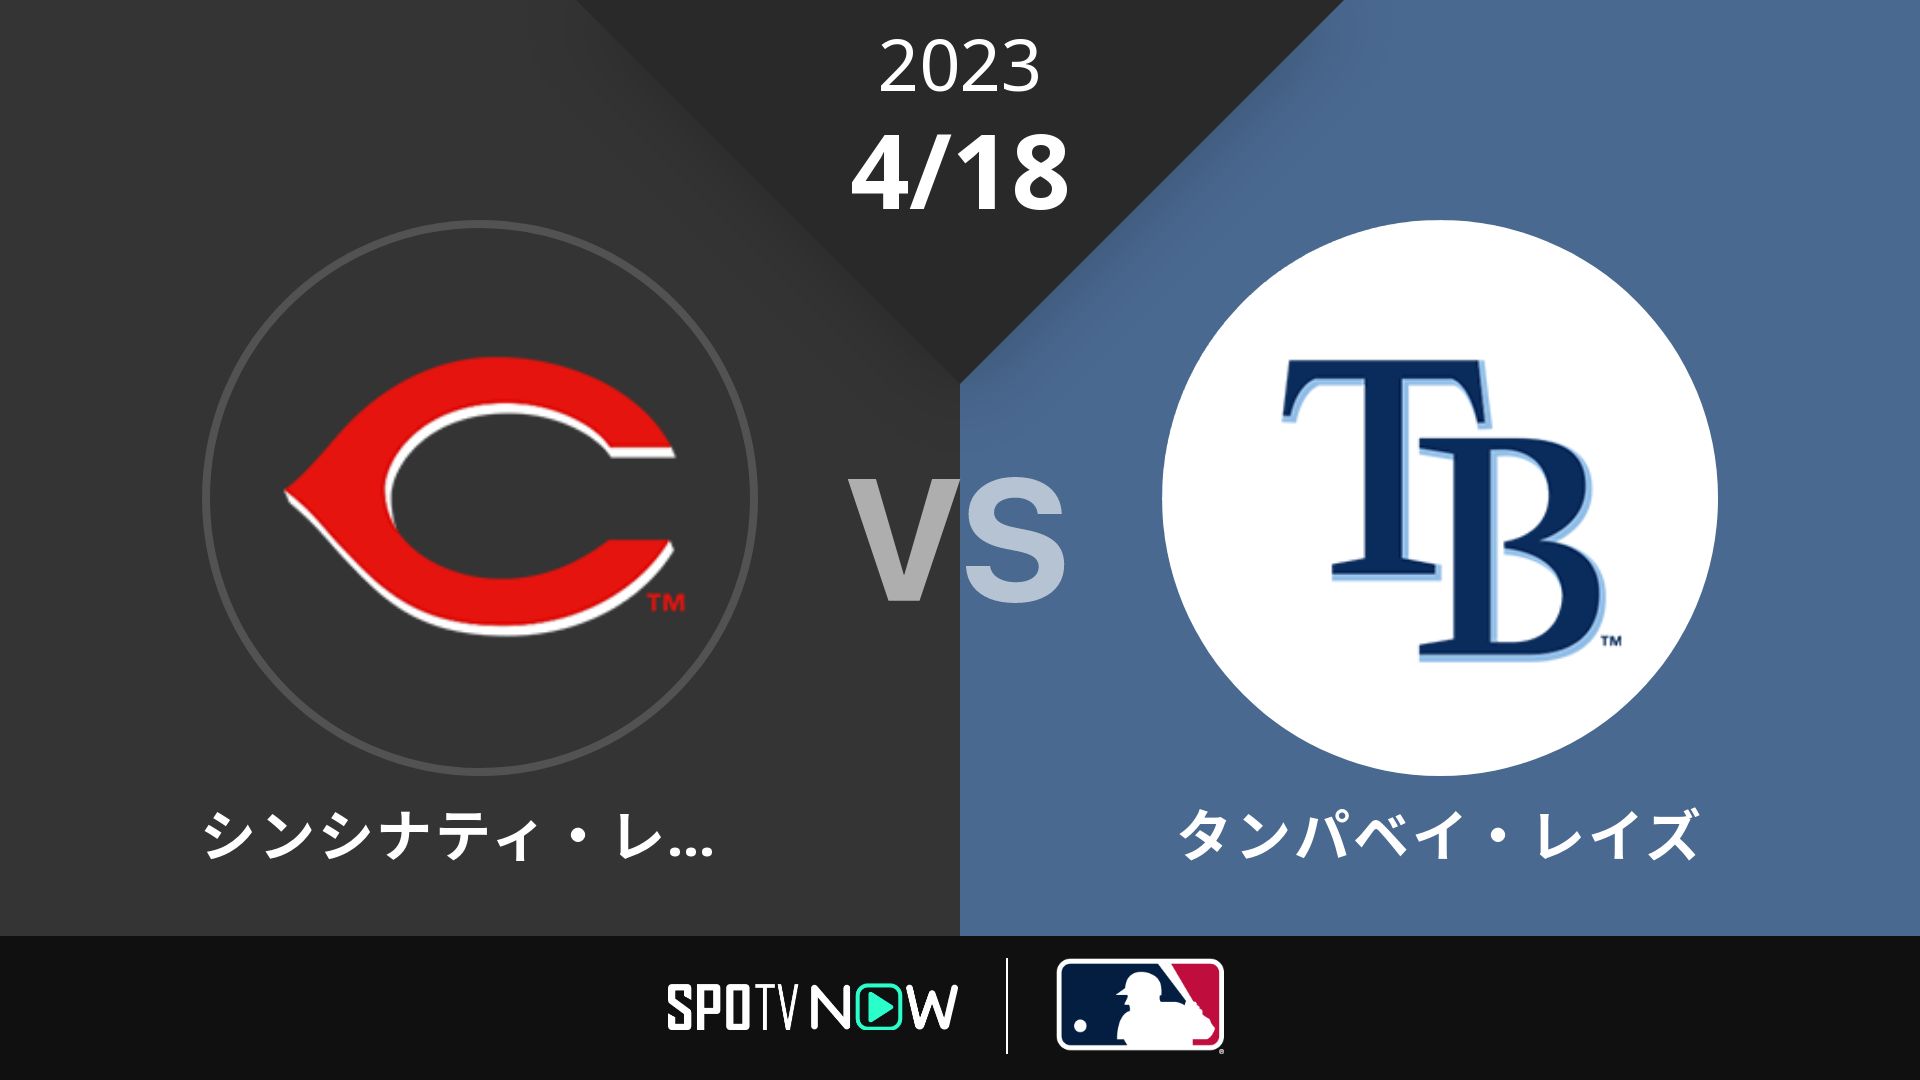 2023/4/18 レッズ vs レイズ [MLB]